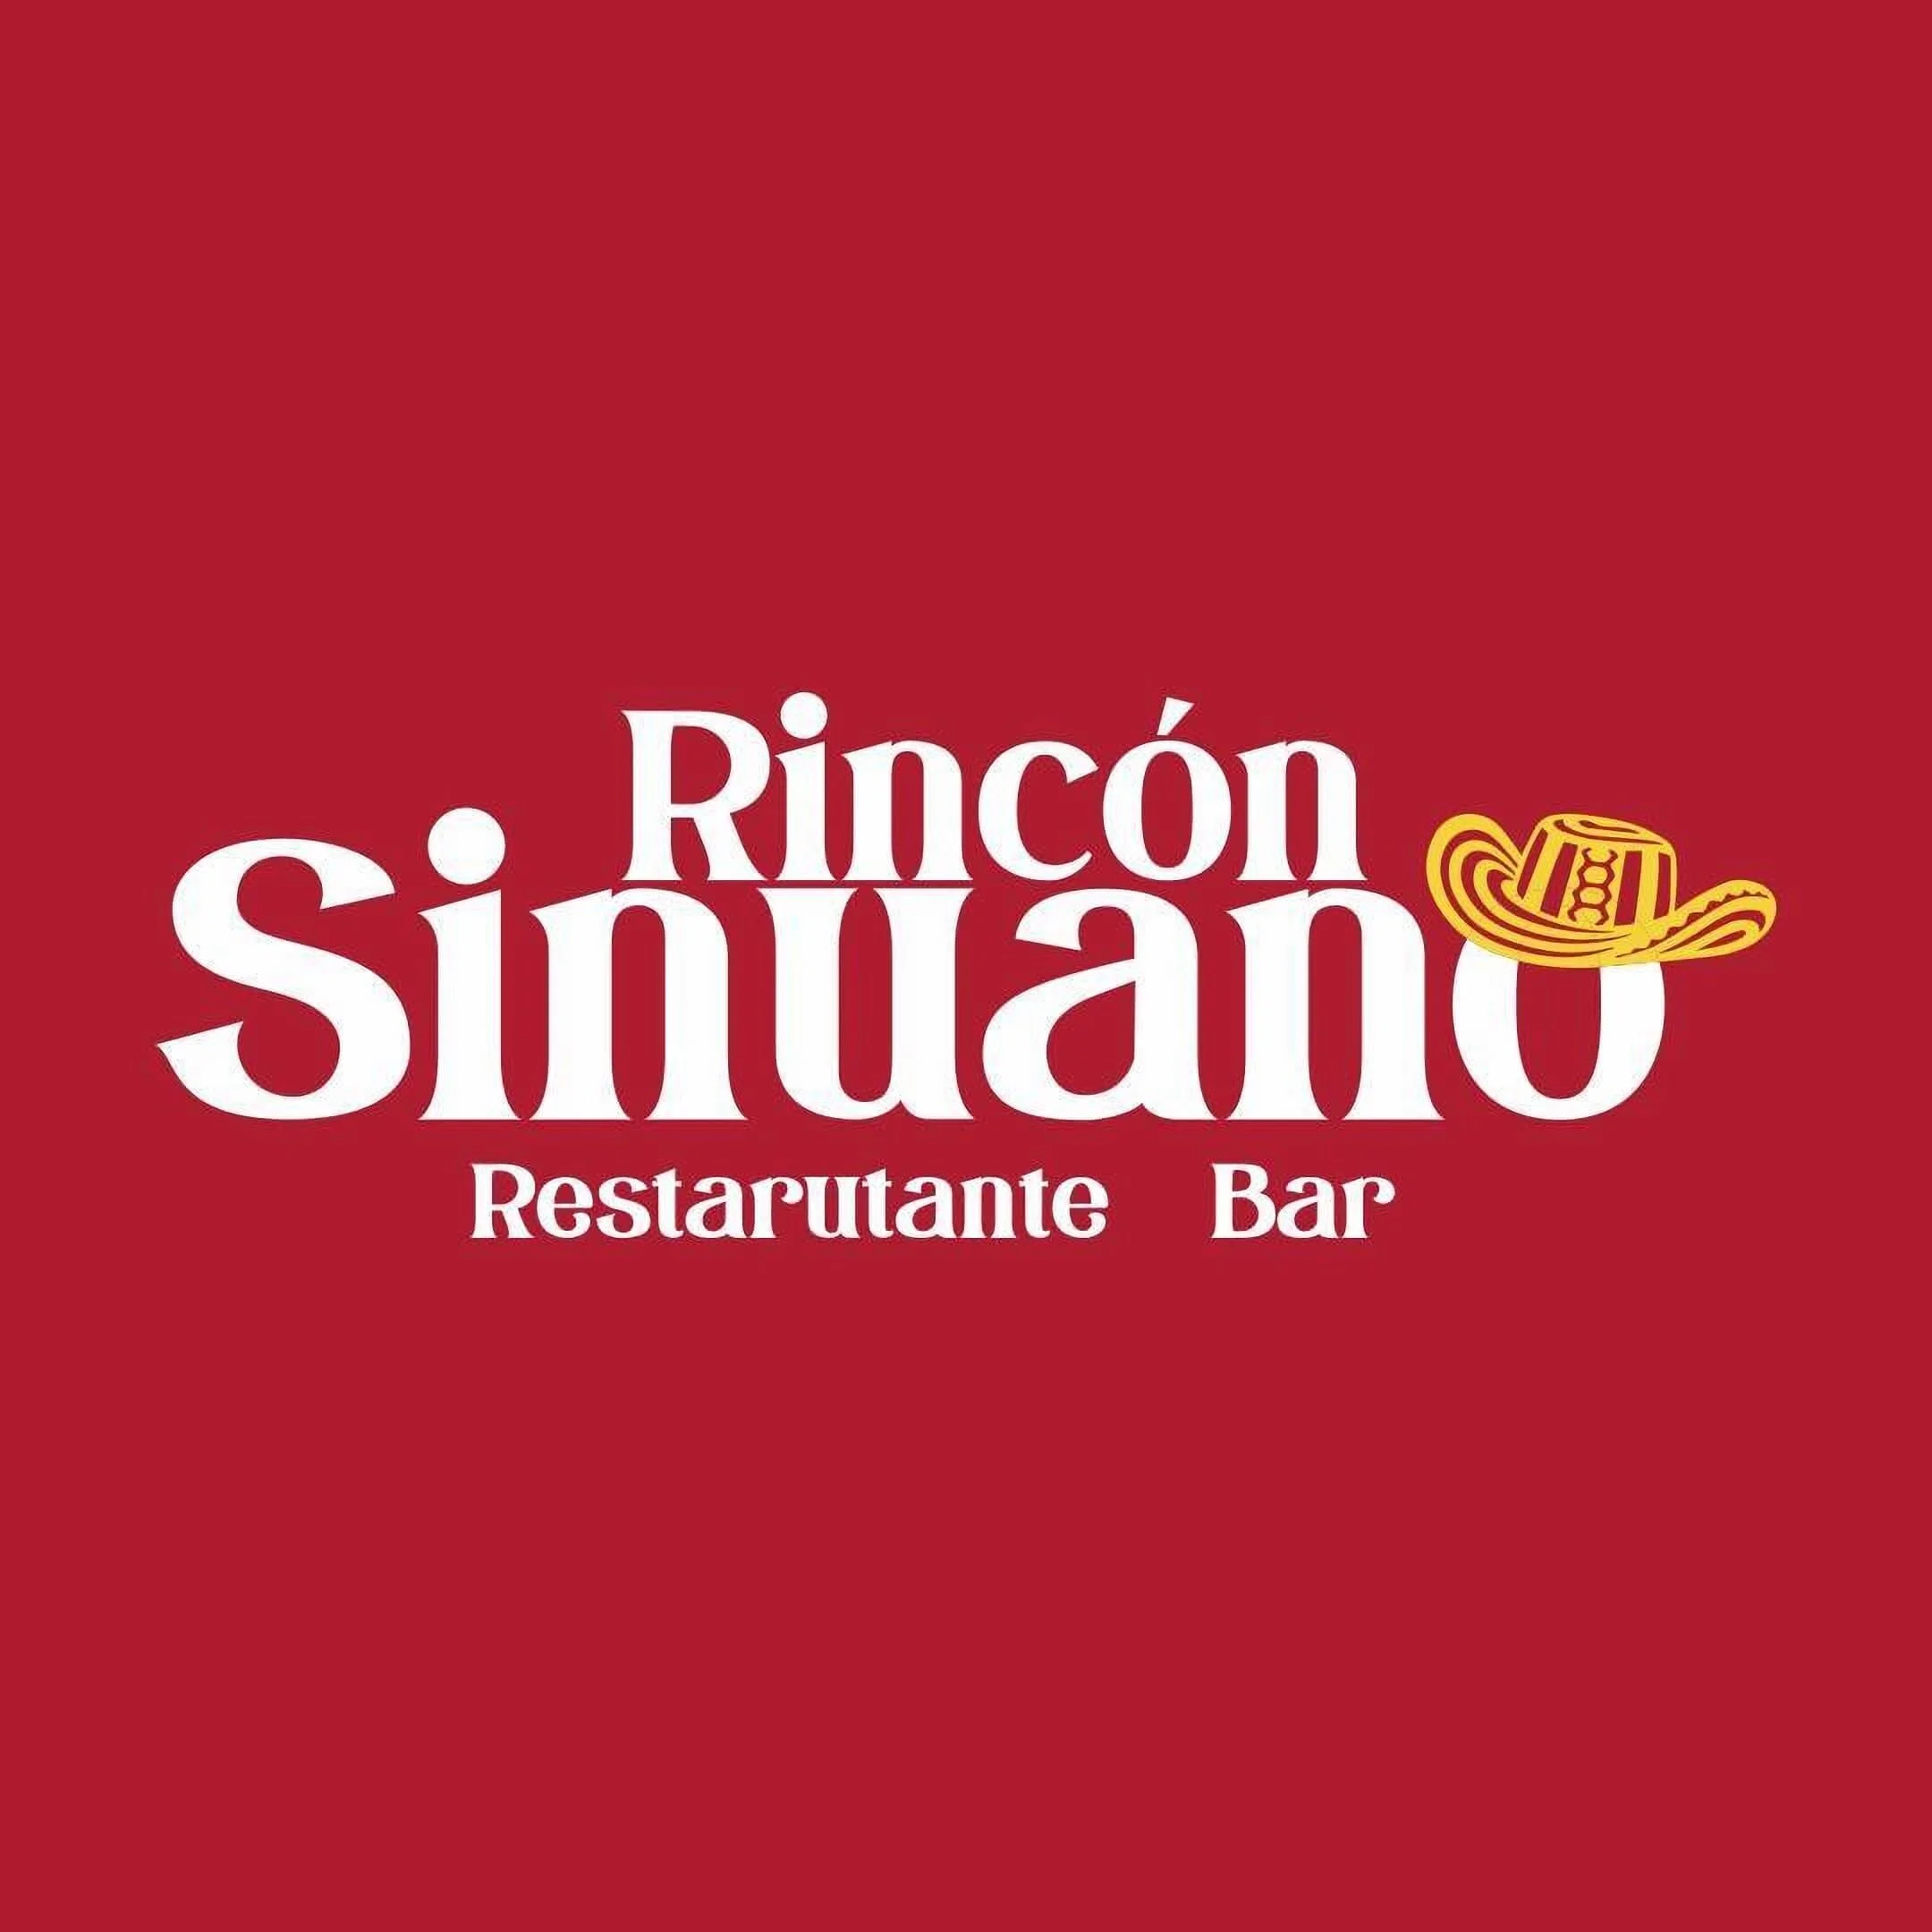 Restaurante-restaurante-el-rincon-sinuano-22613